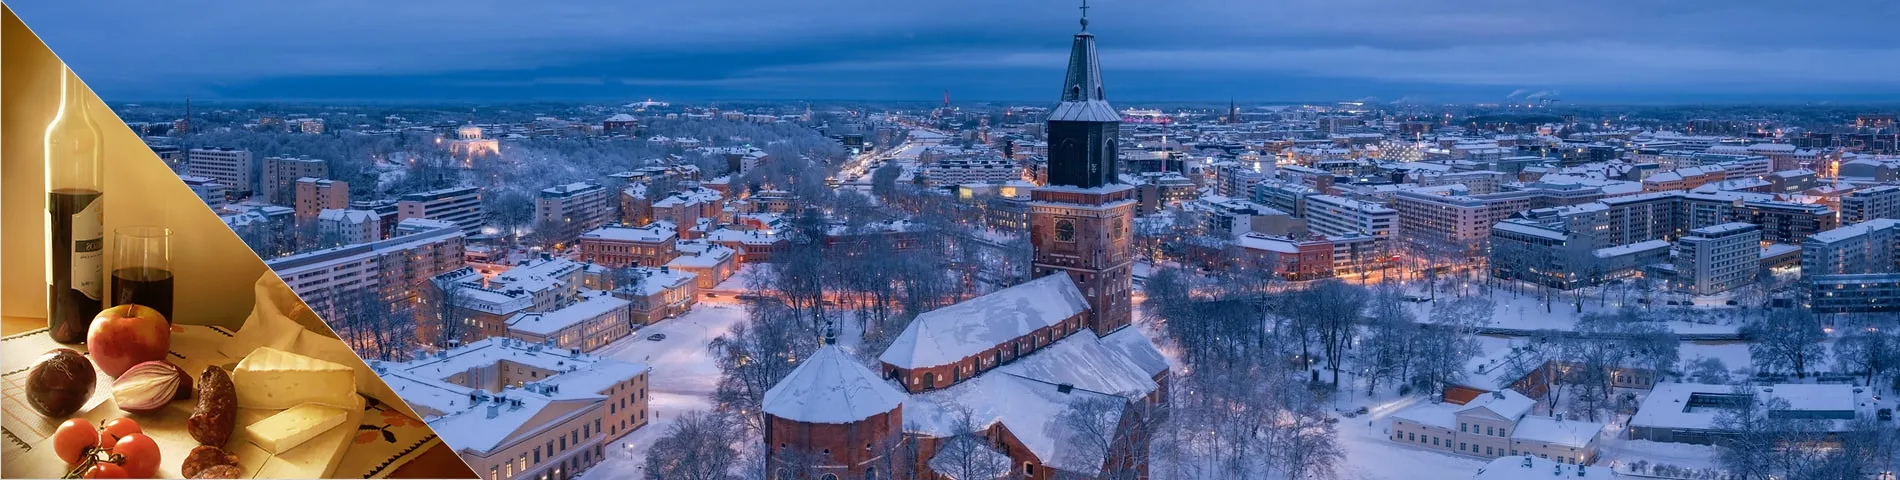 Turku - Finlandais & Culture